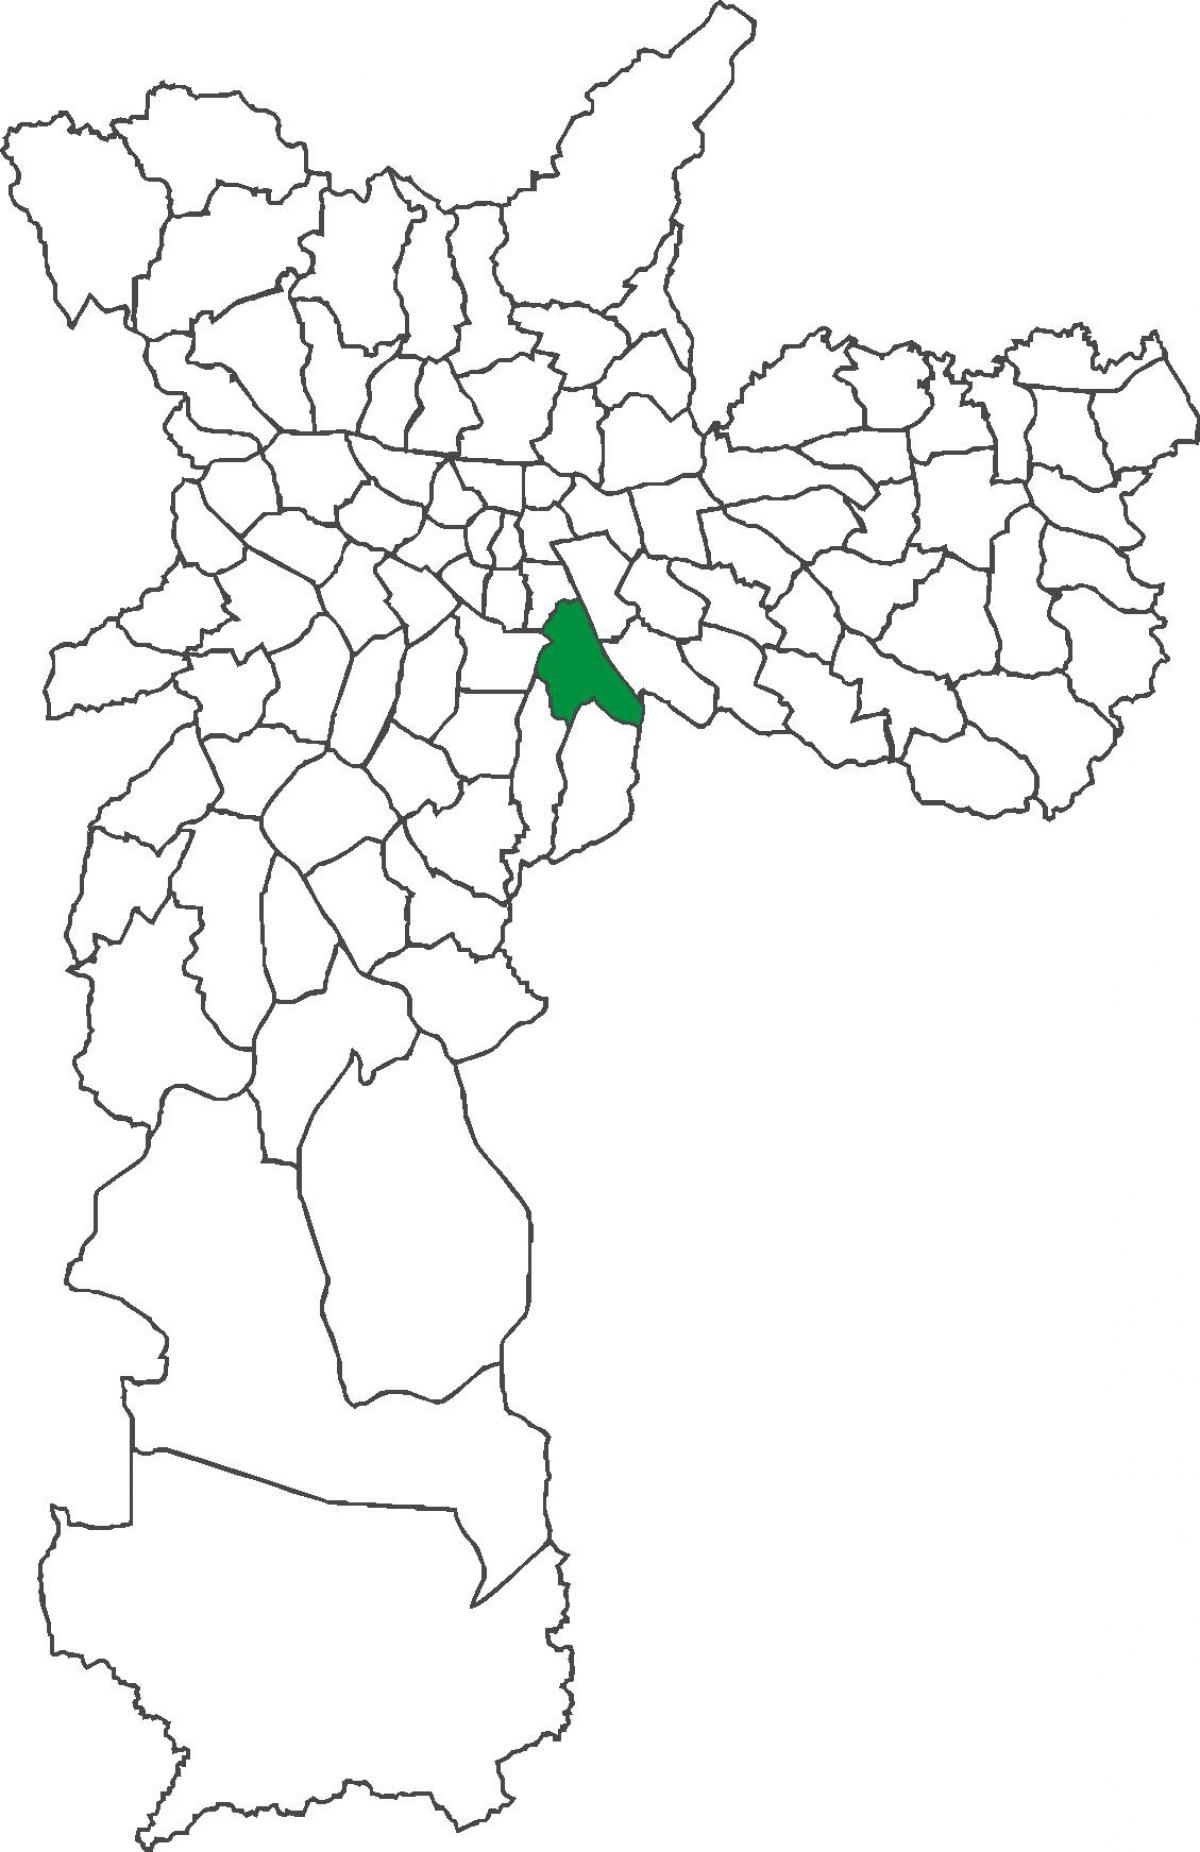 মানচিত্র এর Ipiranga জেলা